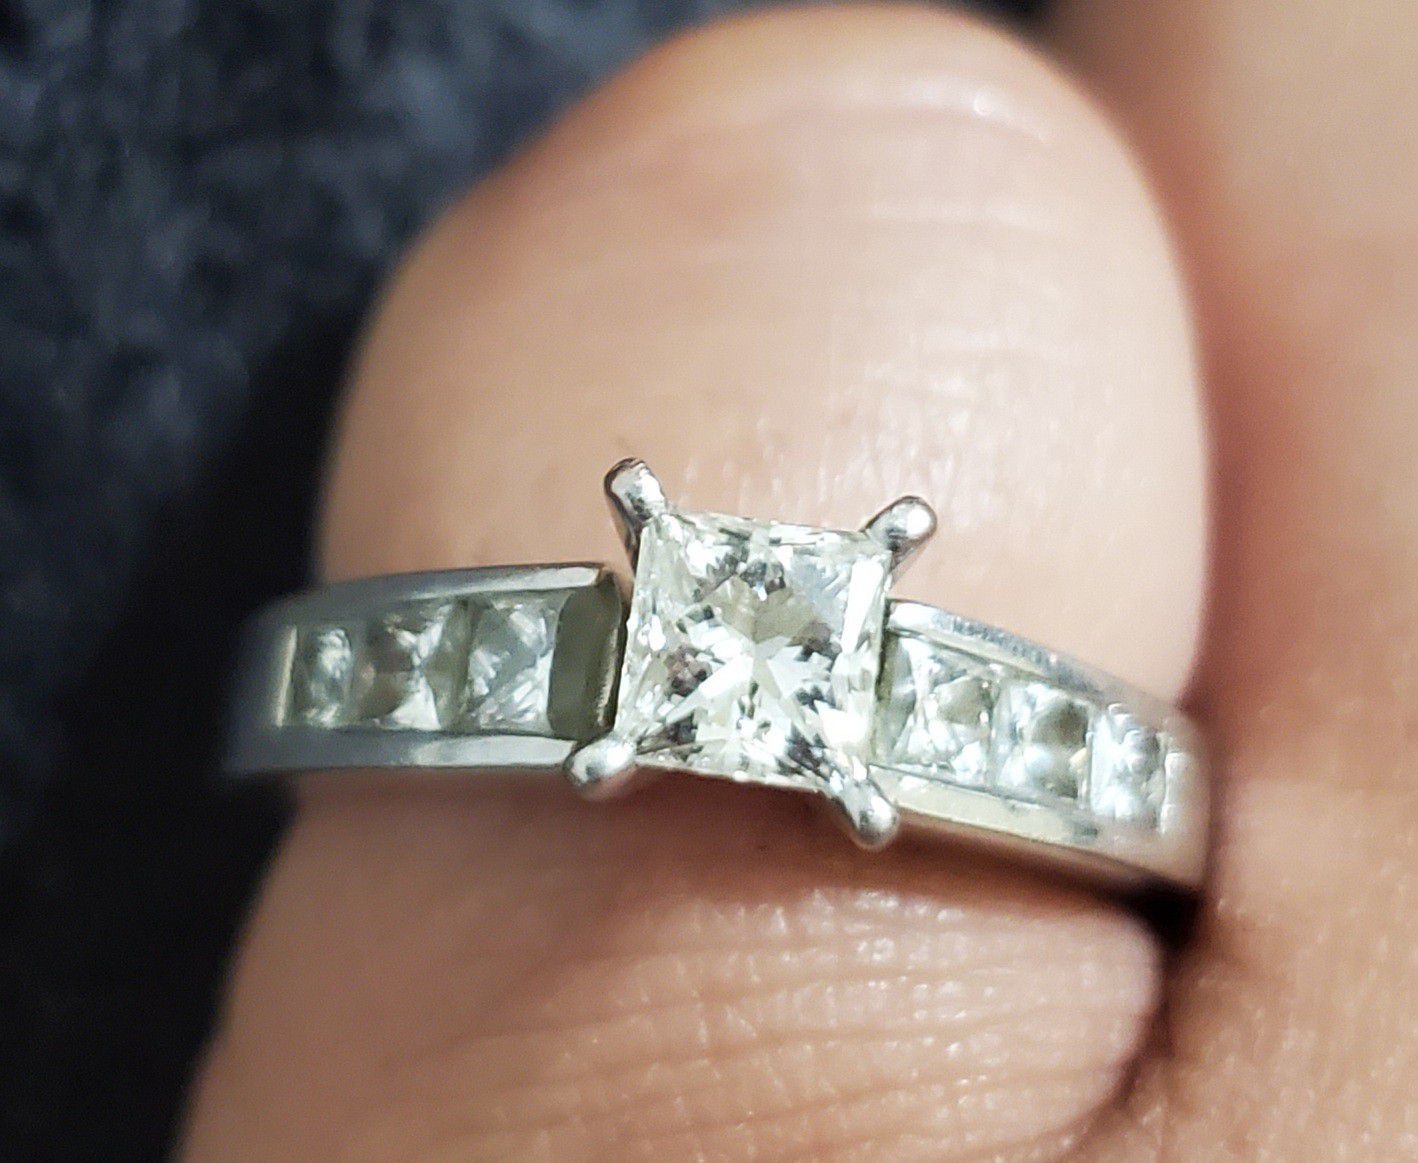 1.5 carat engagement ring